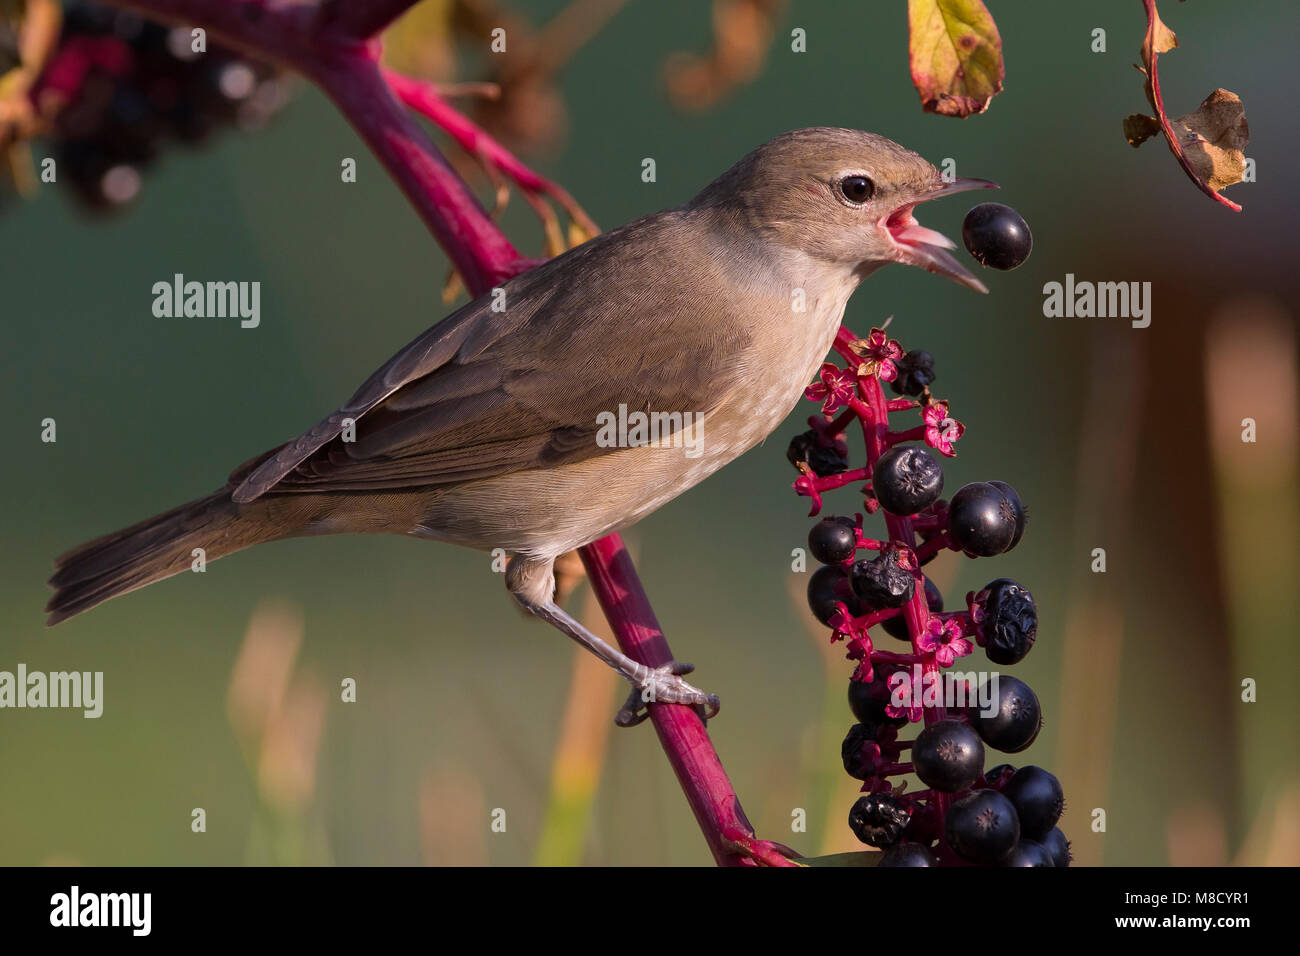 Tuinfluiter foeragerend op bessen; Garden Warbler foraging on berries Stock Photo